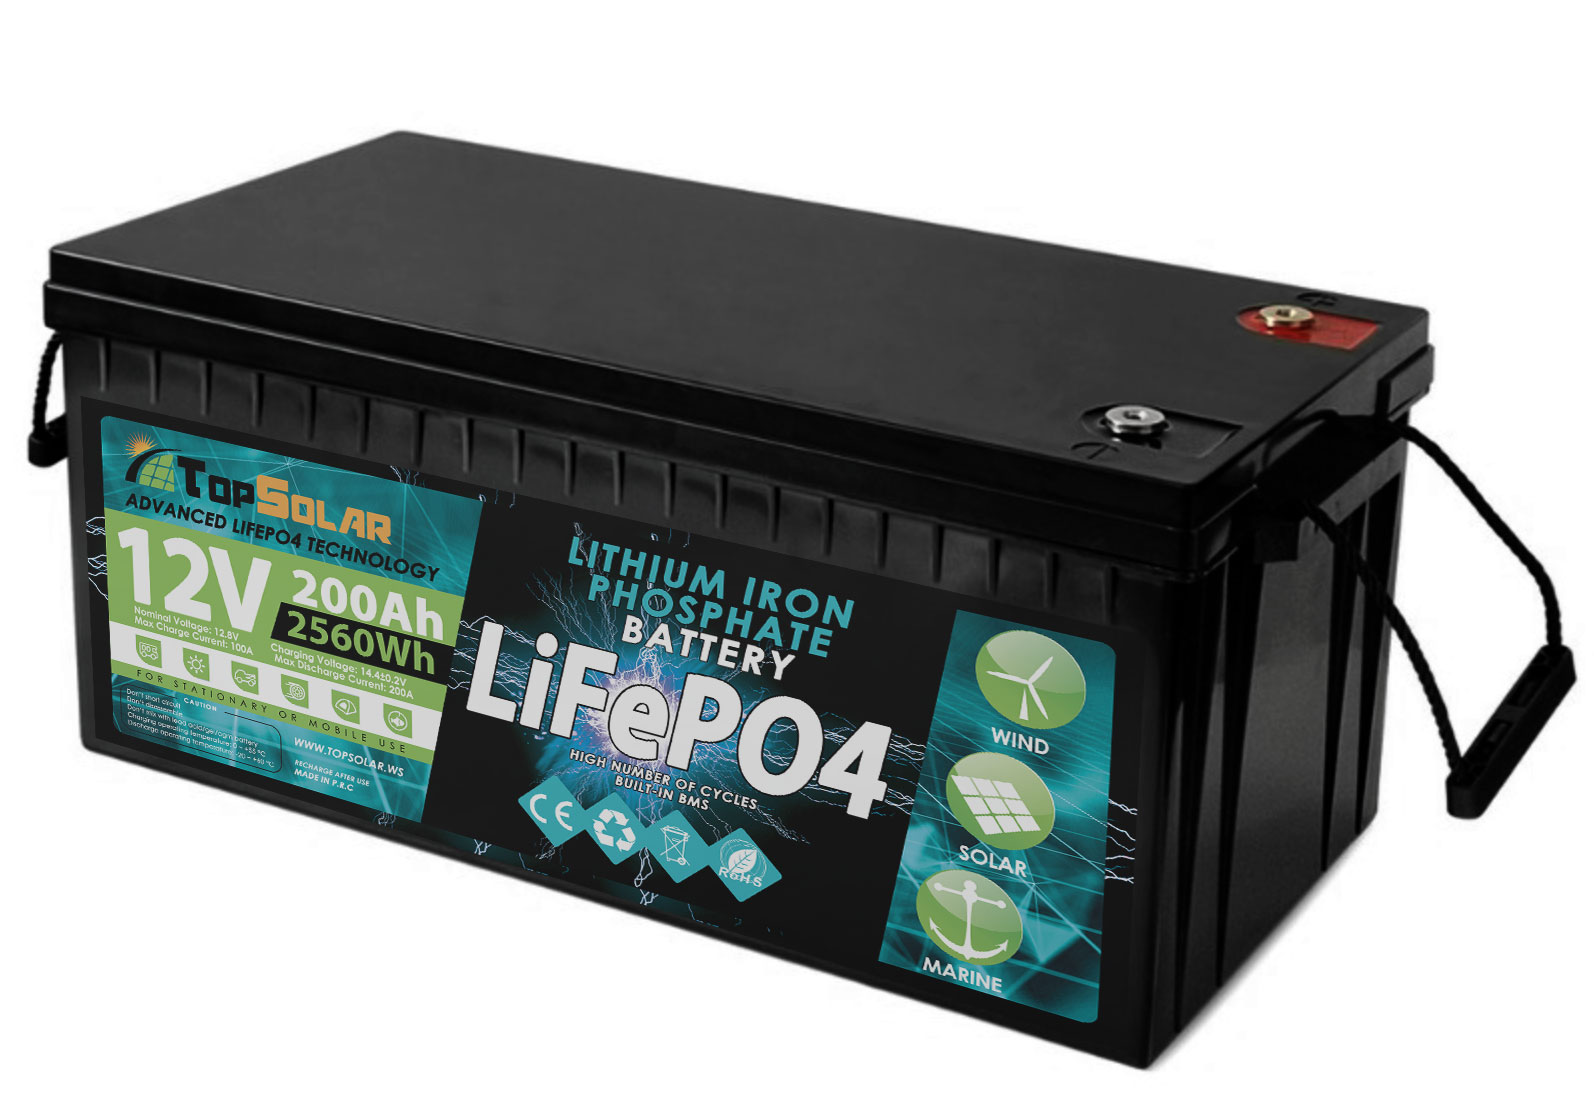 Batterie LITHIUM Fer Phosphate (LiFePO4) 12.8V 200ah Power Battery